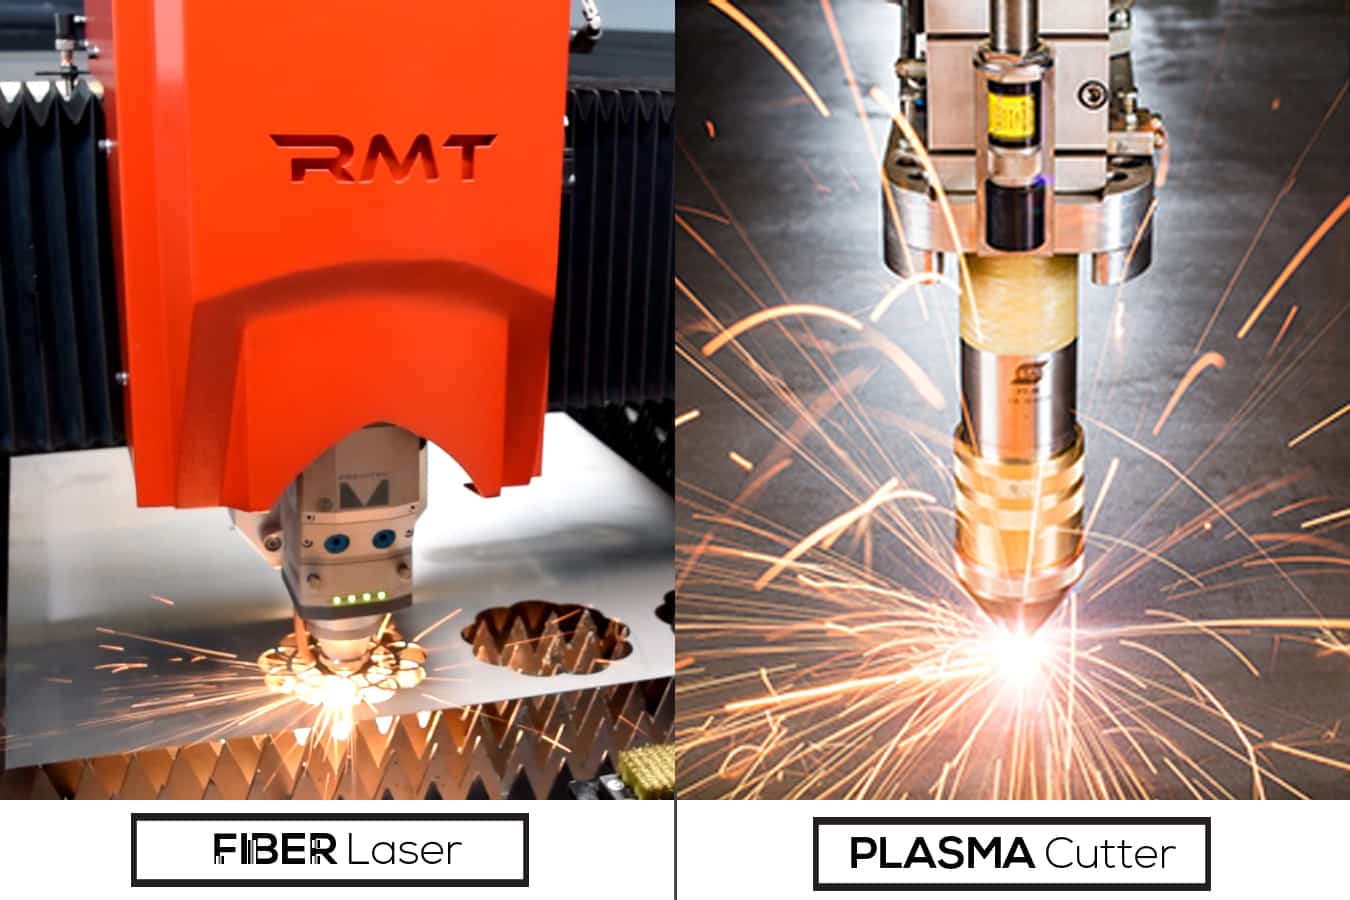 Fiber Laser vs Plasma—Which Is Better?